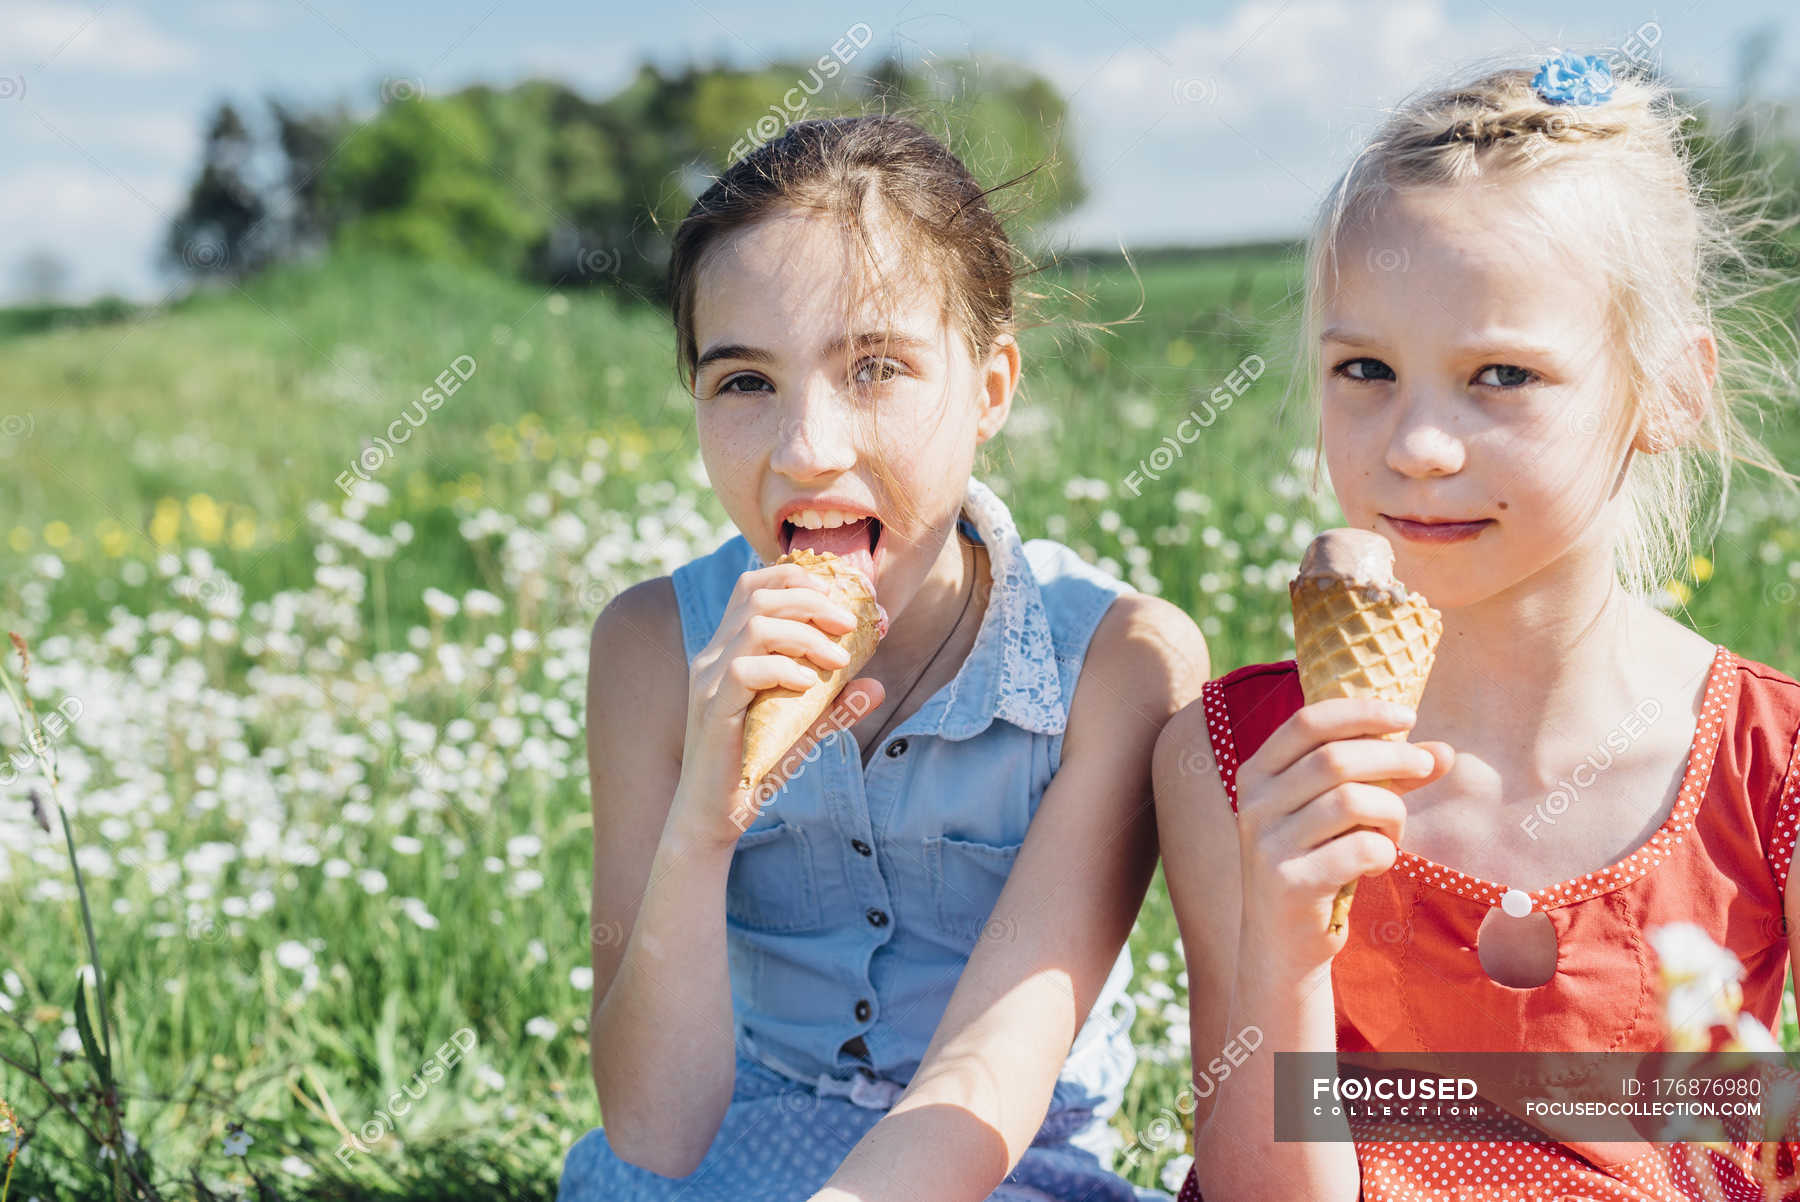 Two girls lick. Девочка ест мороженое. Дети едят мороженое на фоне травы. Счастливая девочка есть мороженое. Девочка ест мороженое вечер.